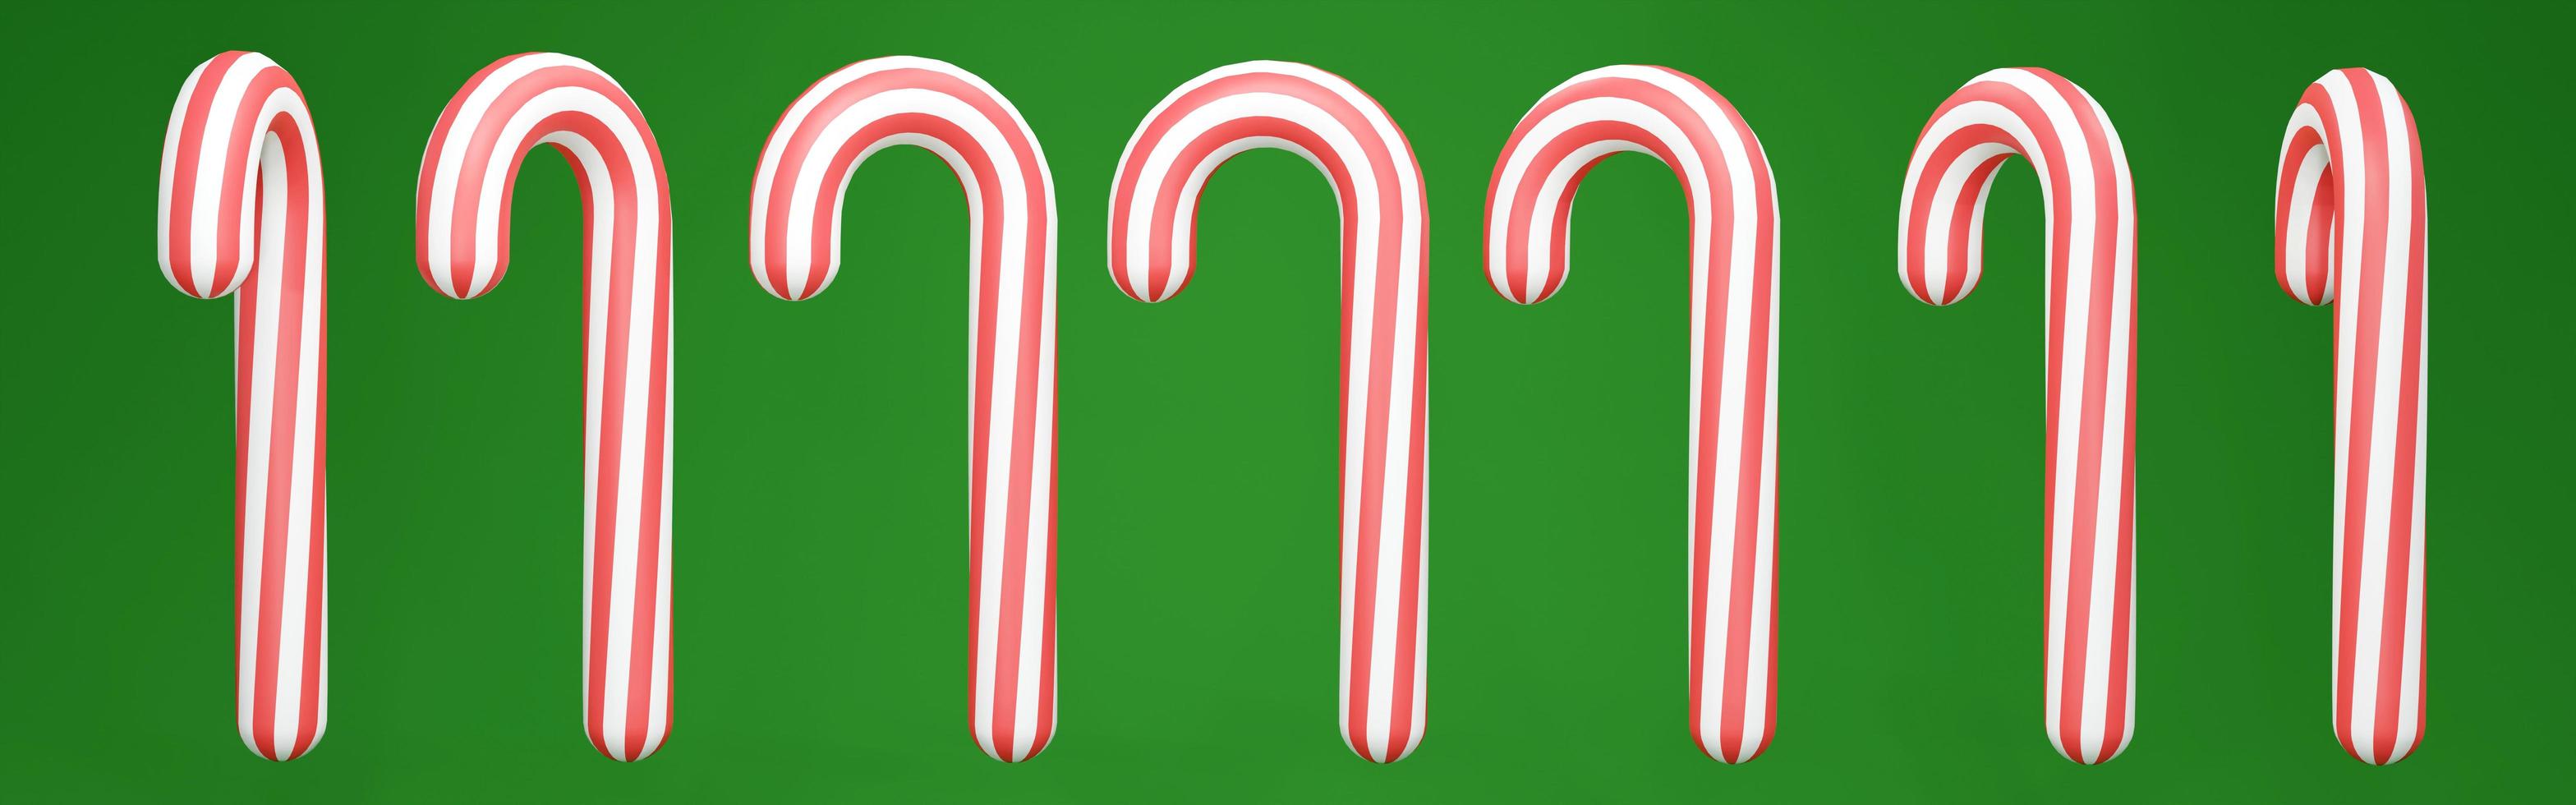 La representación 3d de la lata de caramelo de navidad en color rojo blanco sobre fondo verde gira en muchas vistas. procesamiento 3d ilustración 3d foto